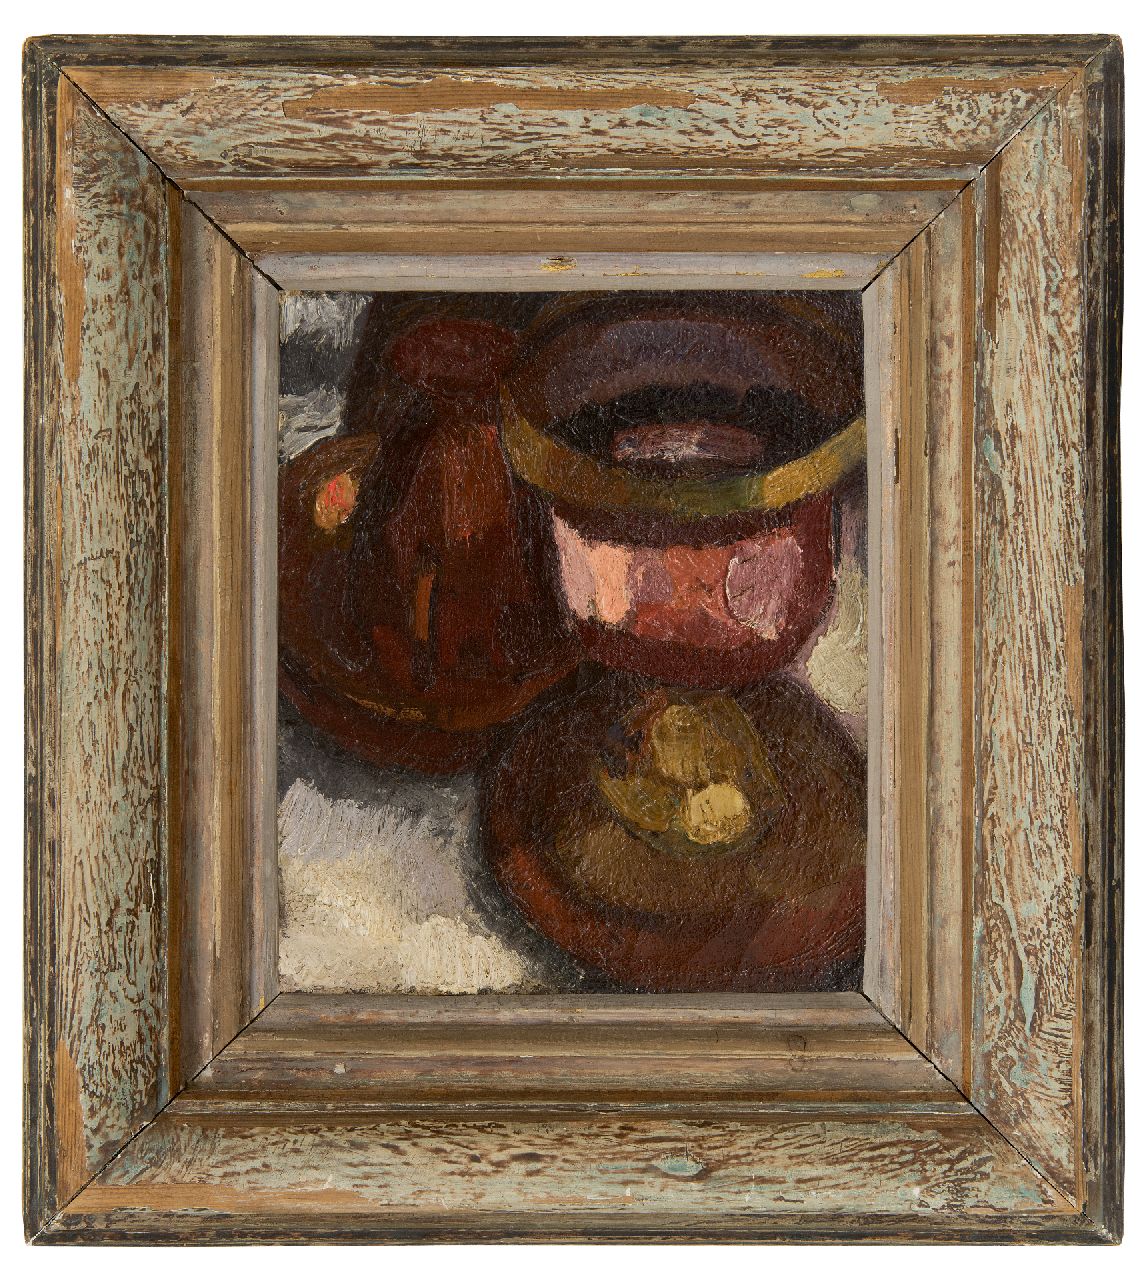 Lau M.J.  | Mattheus Josephus 'Thé' Lau | Schilderijen te koop aangeboden | Stilleven, olieverf op doek 26,2 x 22,7 cm, te dateren ca. 1915